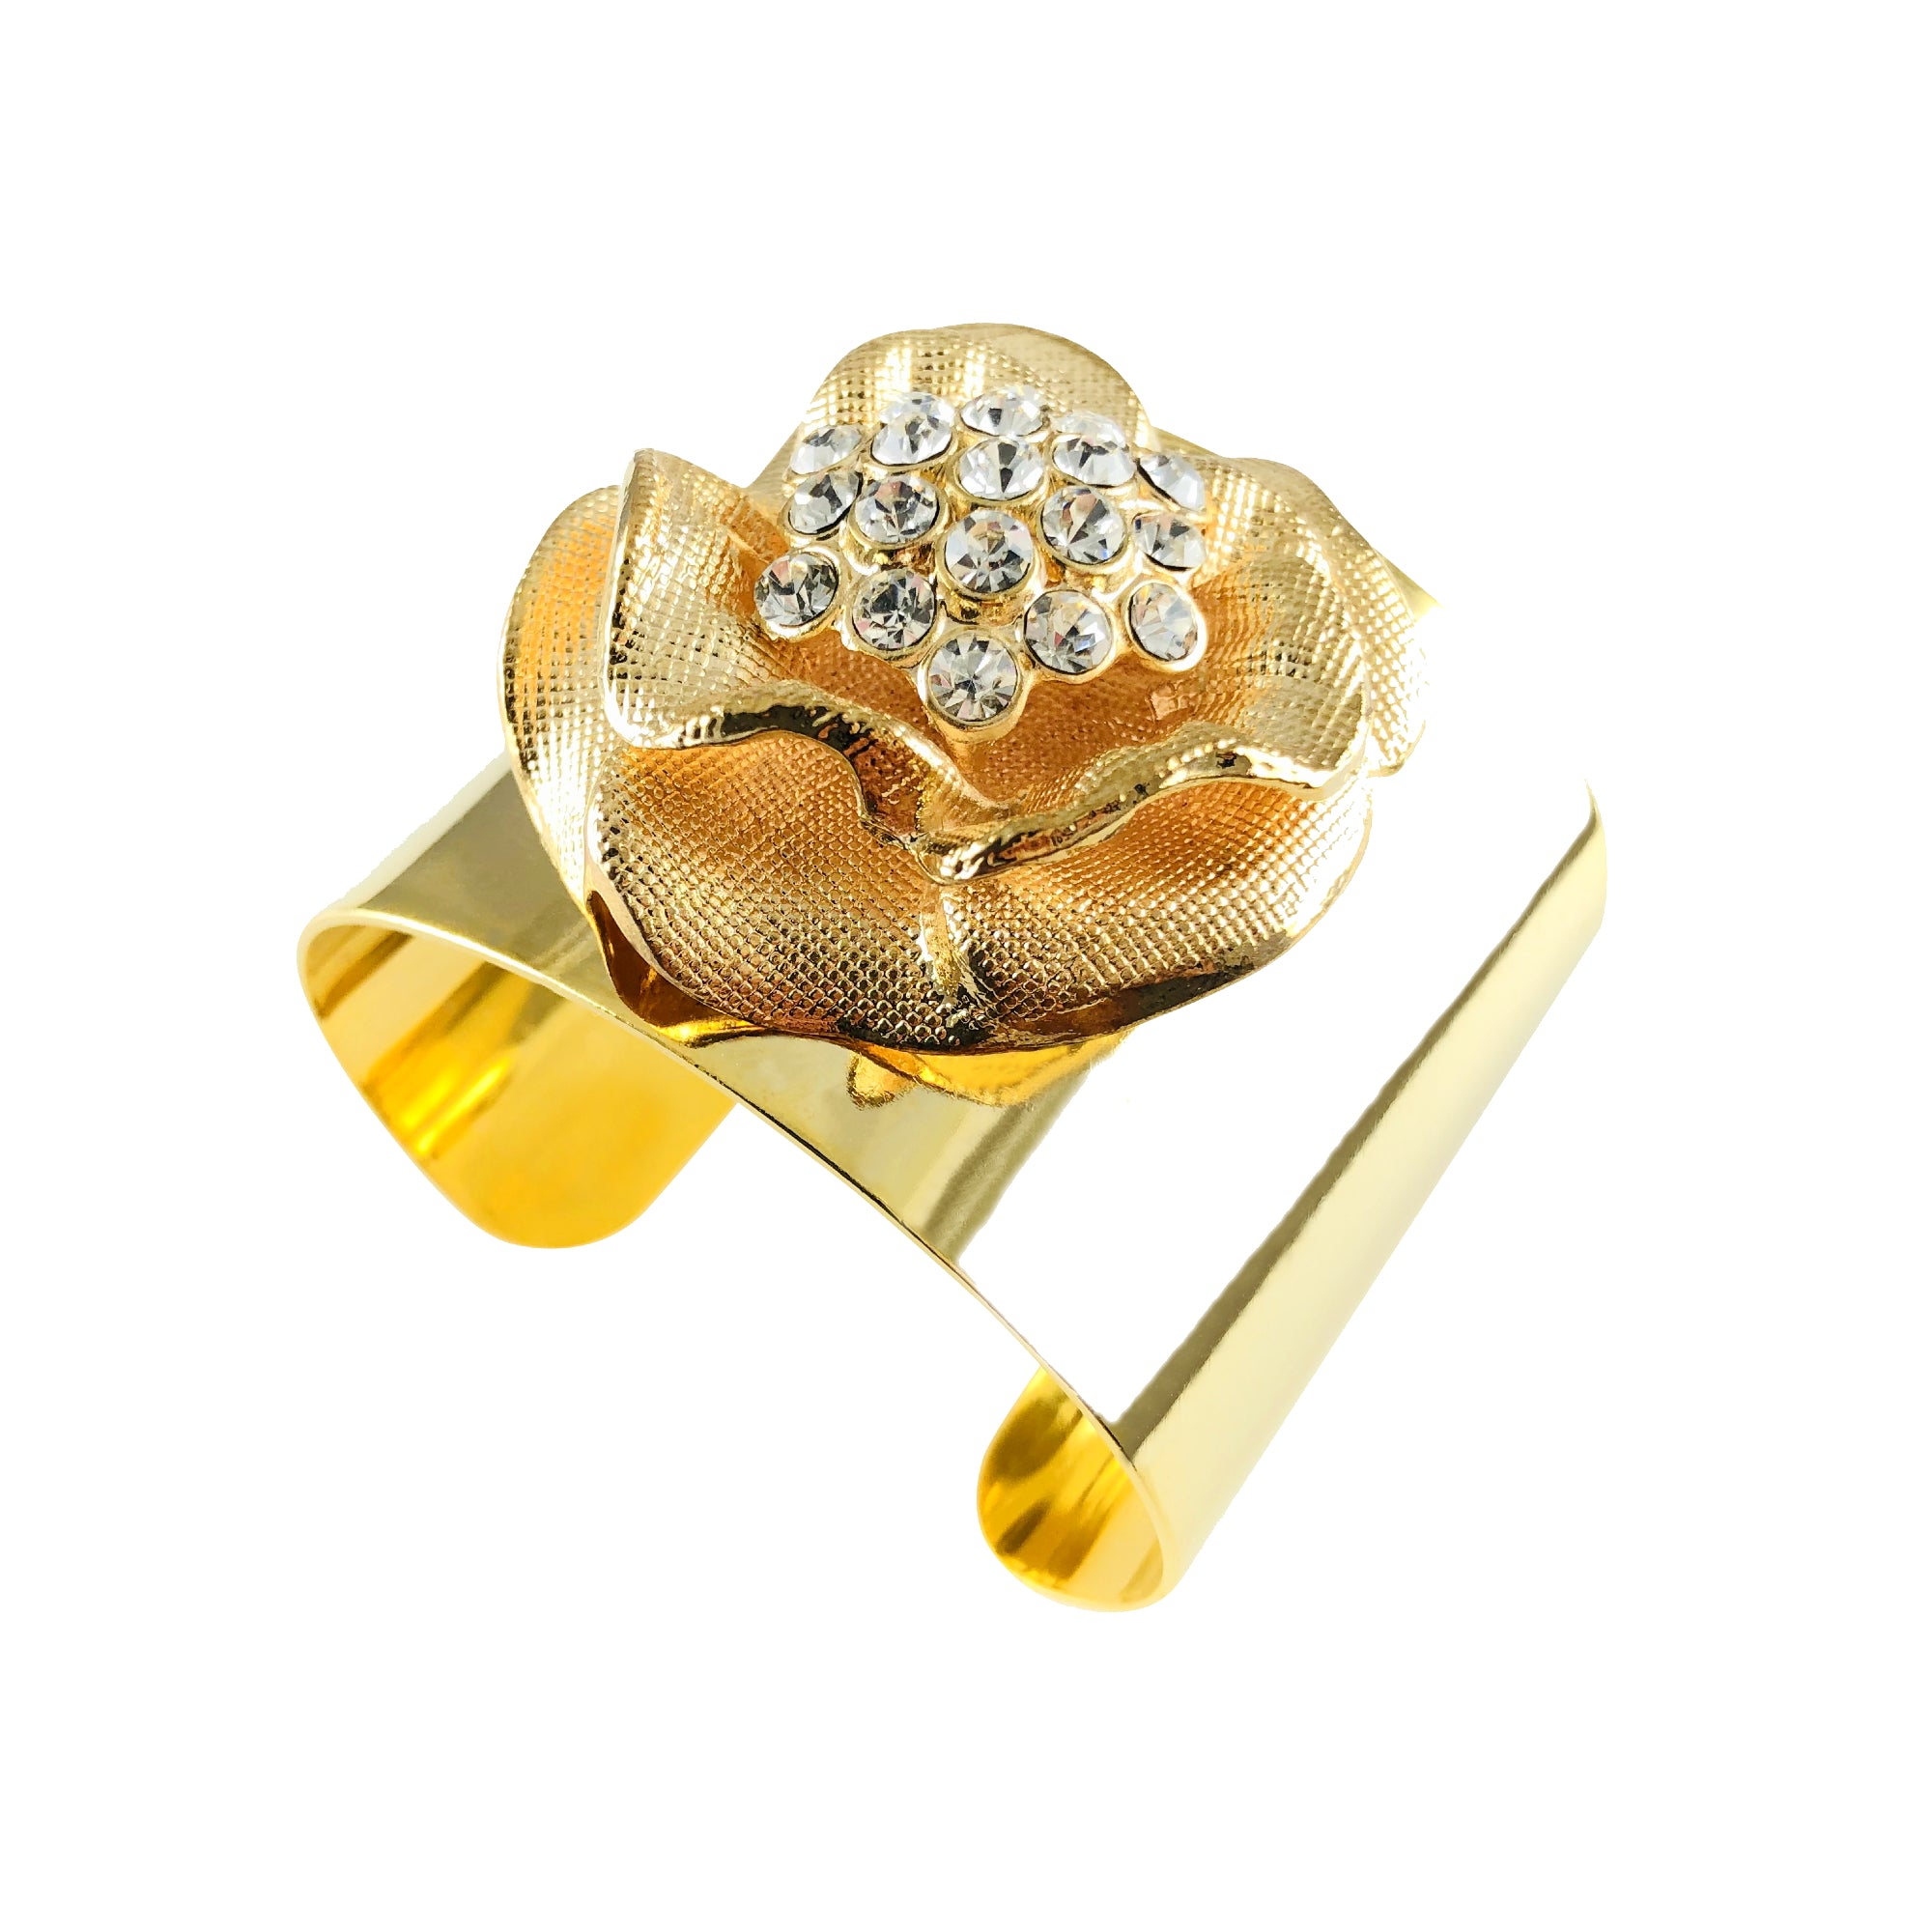 Mizdragonfly Jewelry Adriatix Rose Gold Cuff Bracelet Angle